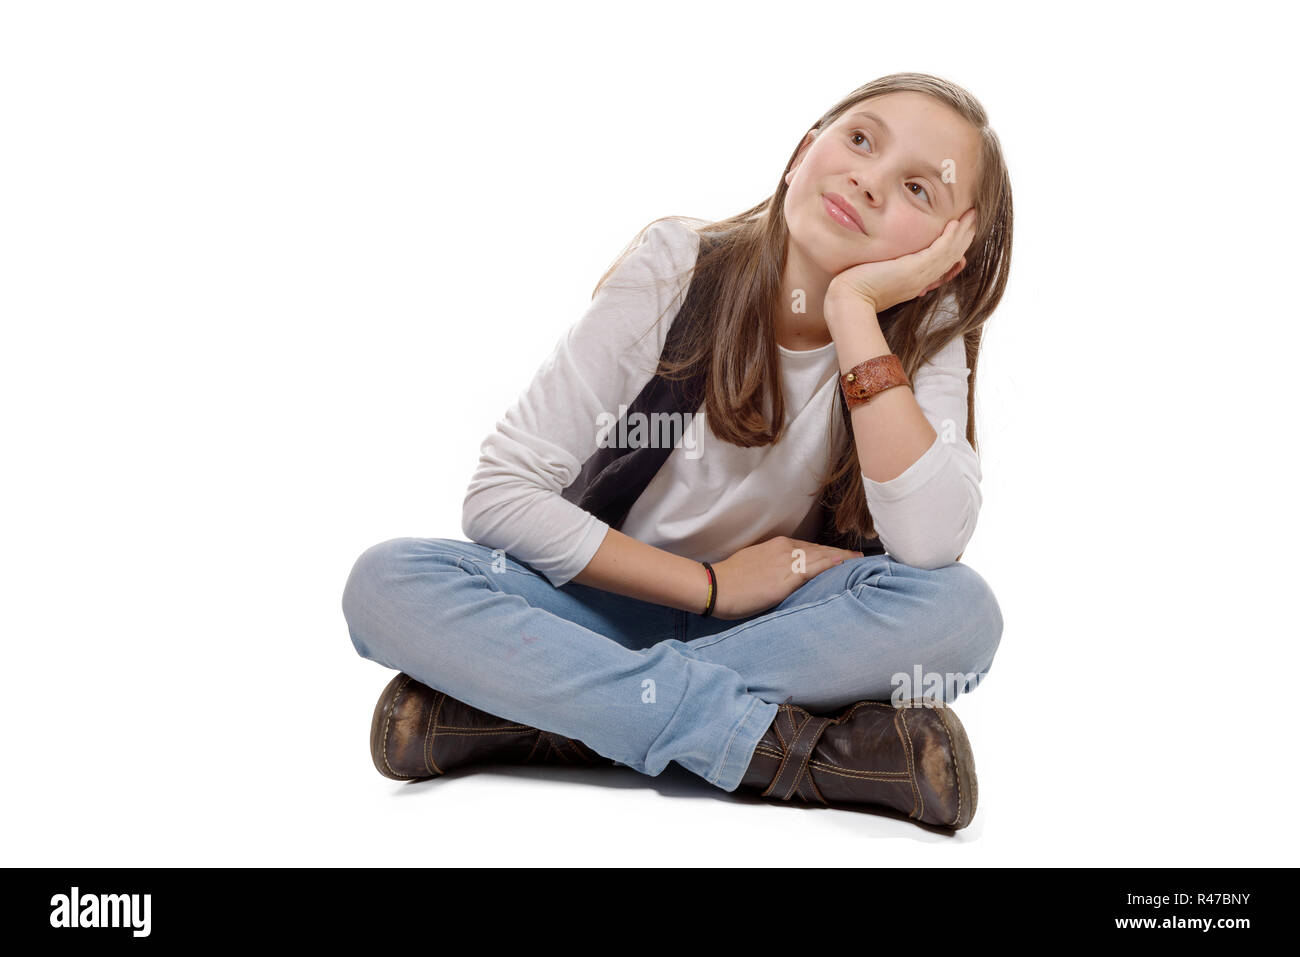 Девочка сидит на белом фоне